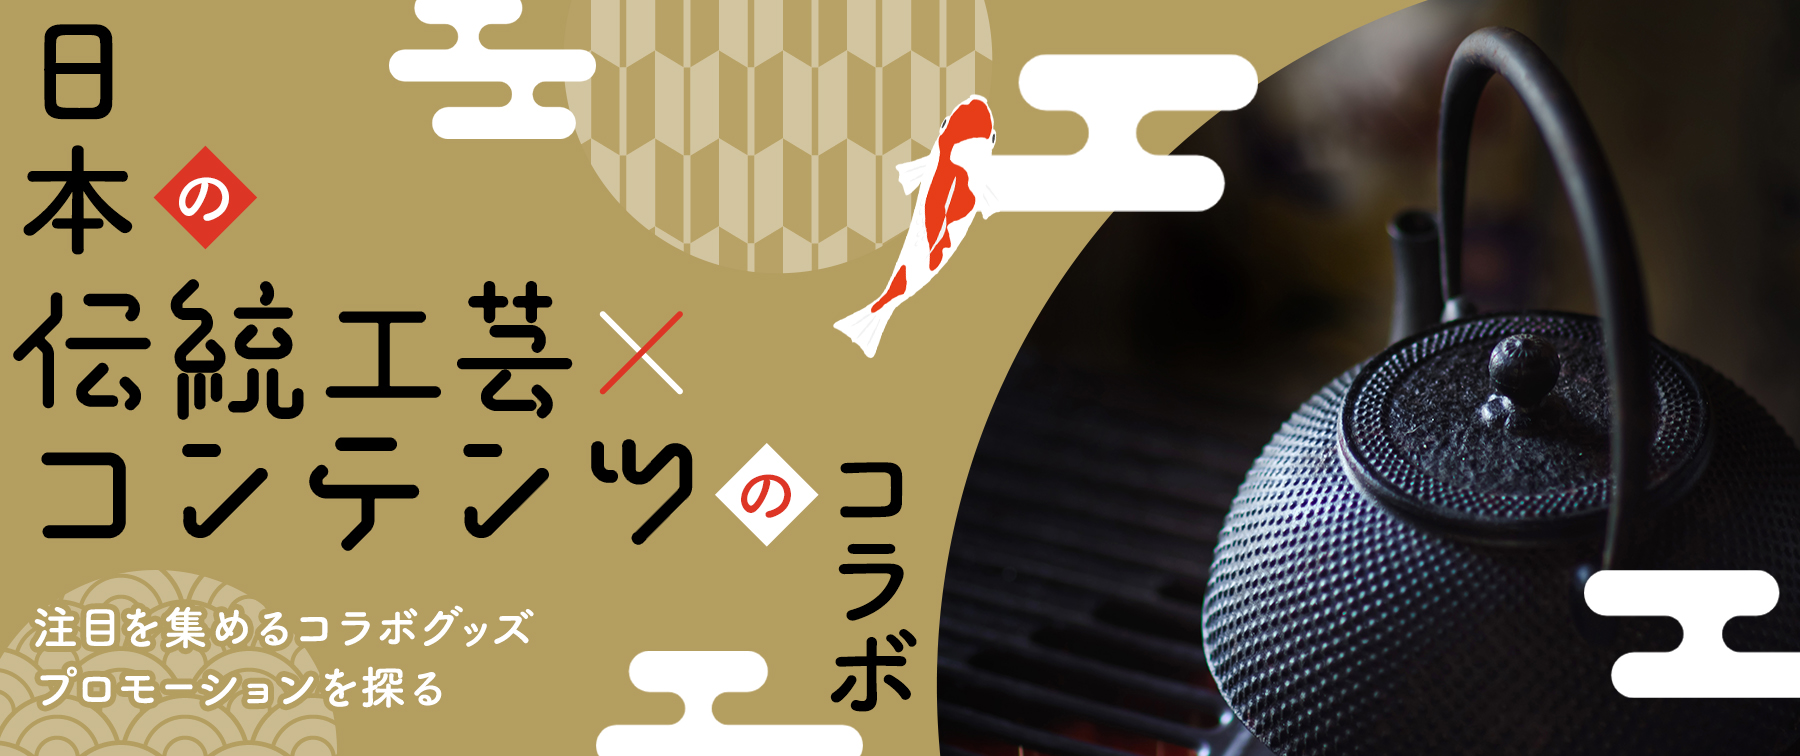 日本の伝統工芸×コンテンツのコラボ　注目を集めるコラボグッズプロモーションを探る